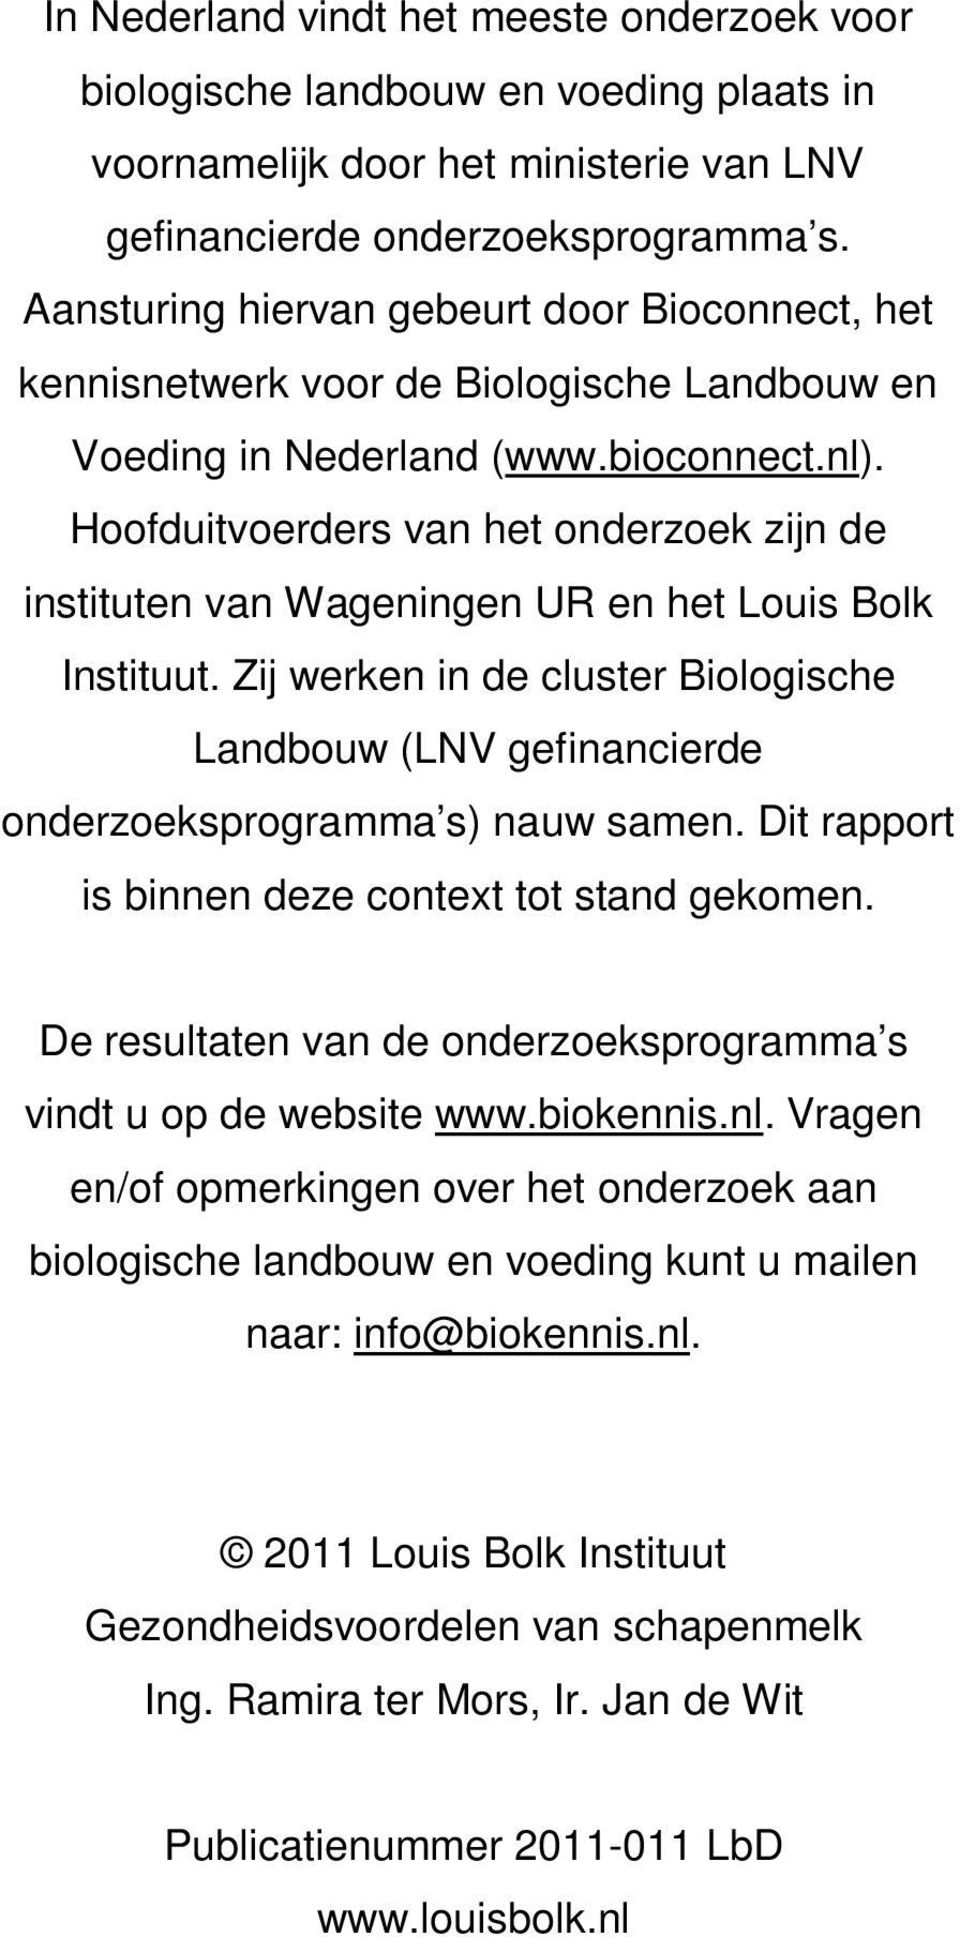 Hoofduitvoerders van het onderzoek zijn de instituten van Wageningen UR en het Louis Bolk Instituut. Zij werken in de cluster Biologische Landbouw (LNV gefinancierde onderzoeksprogramma s) nauw samen.